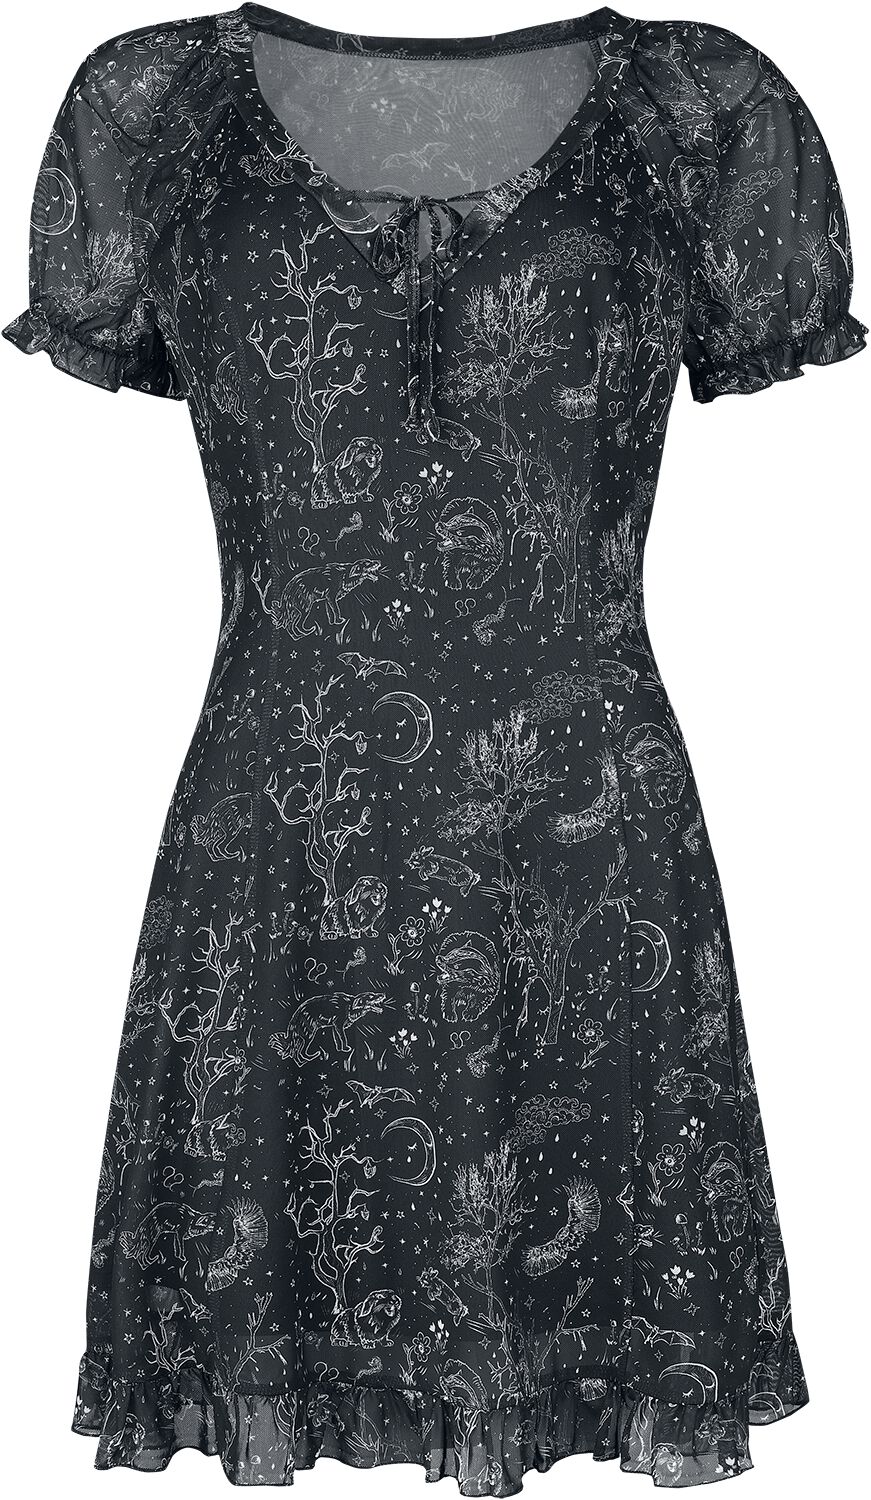 Robe courte Gothic de Jawbreaker - Night Forest Mesh Dress - S à 4XL - pour Femme - noir/blanc